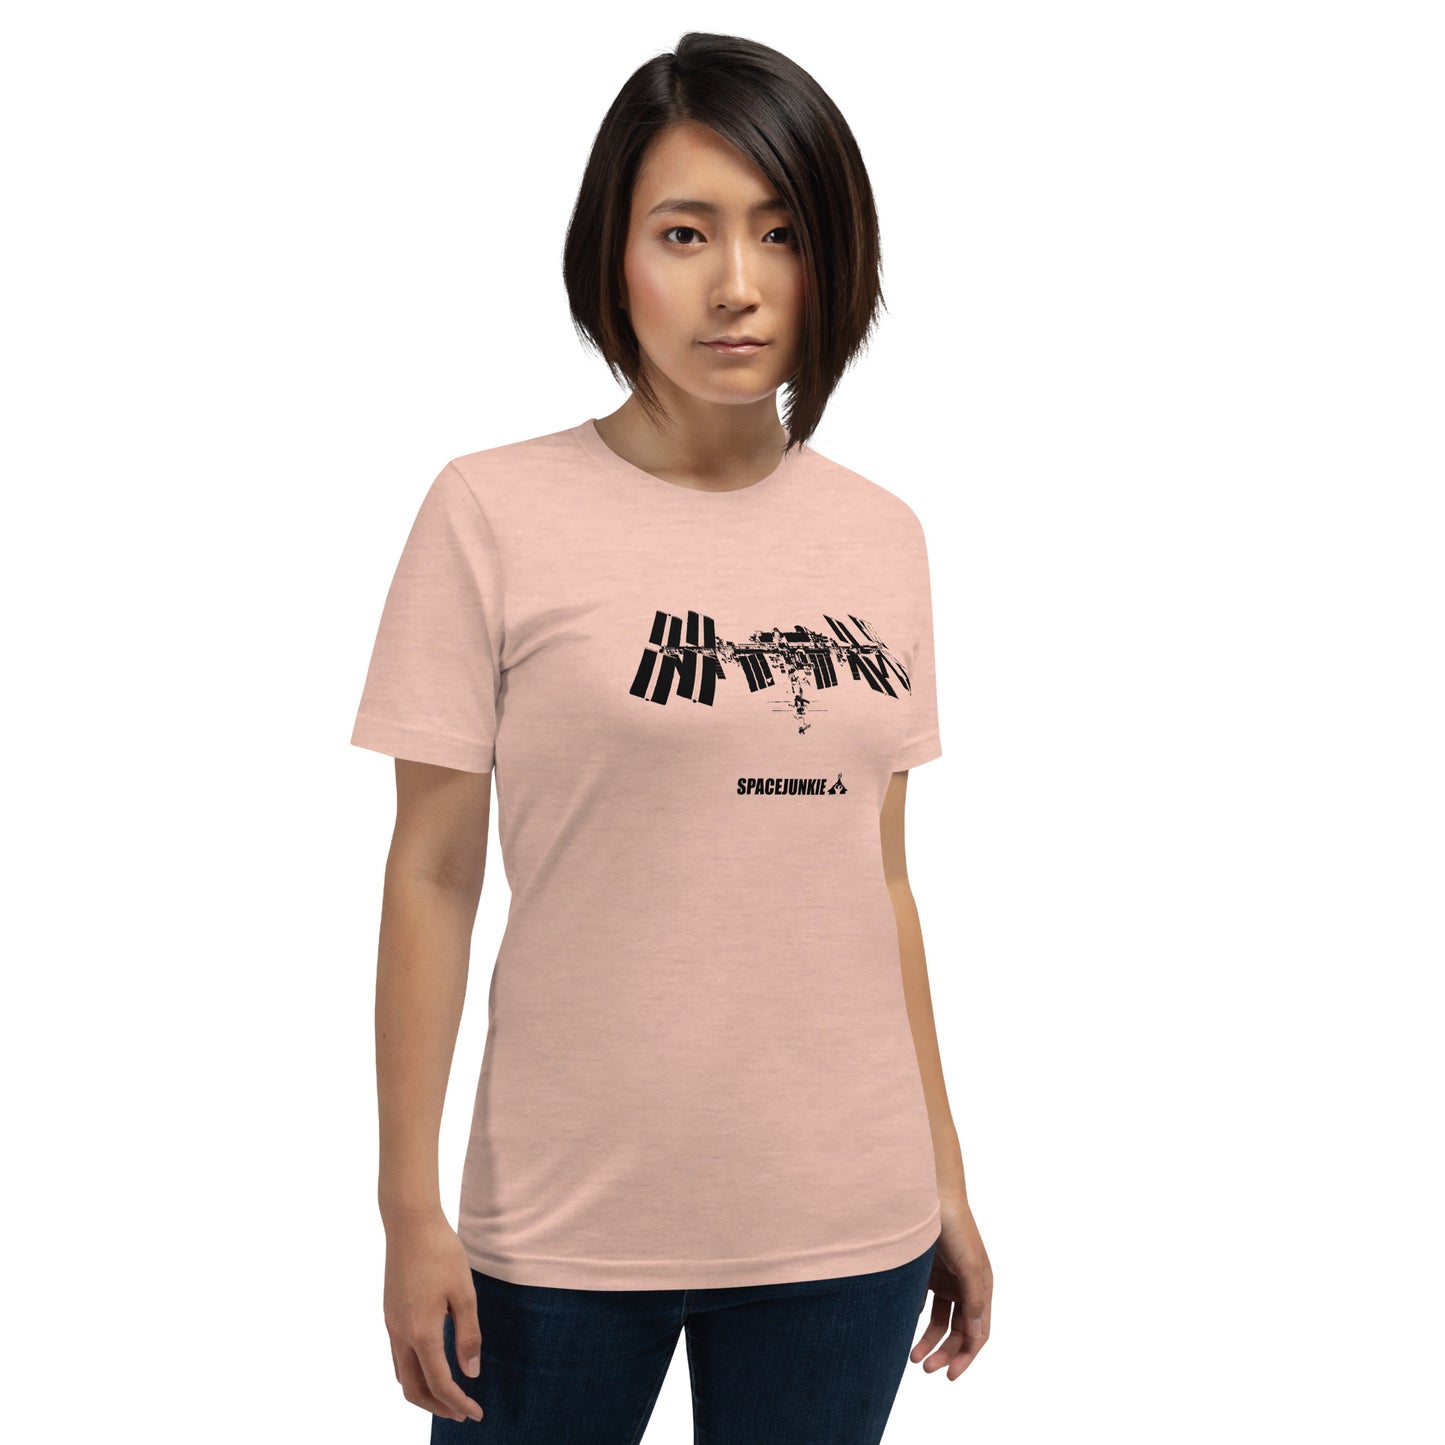 Nemzetközi Űrállomás női póló világos